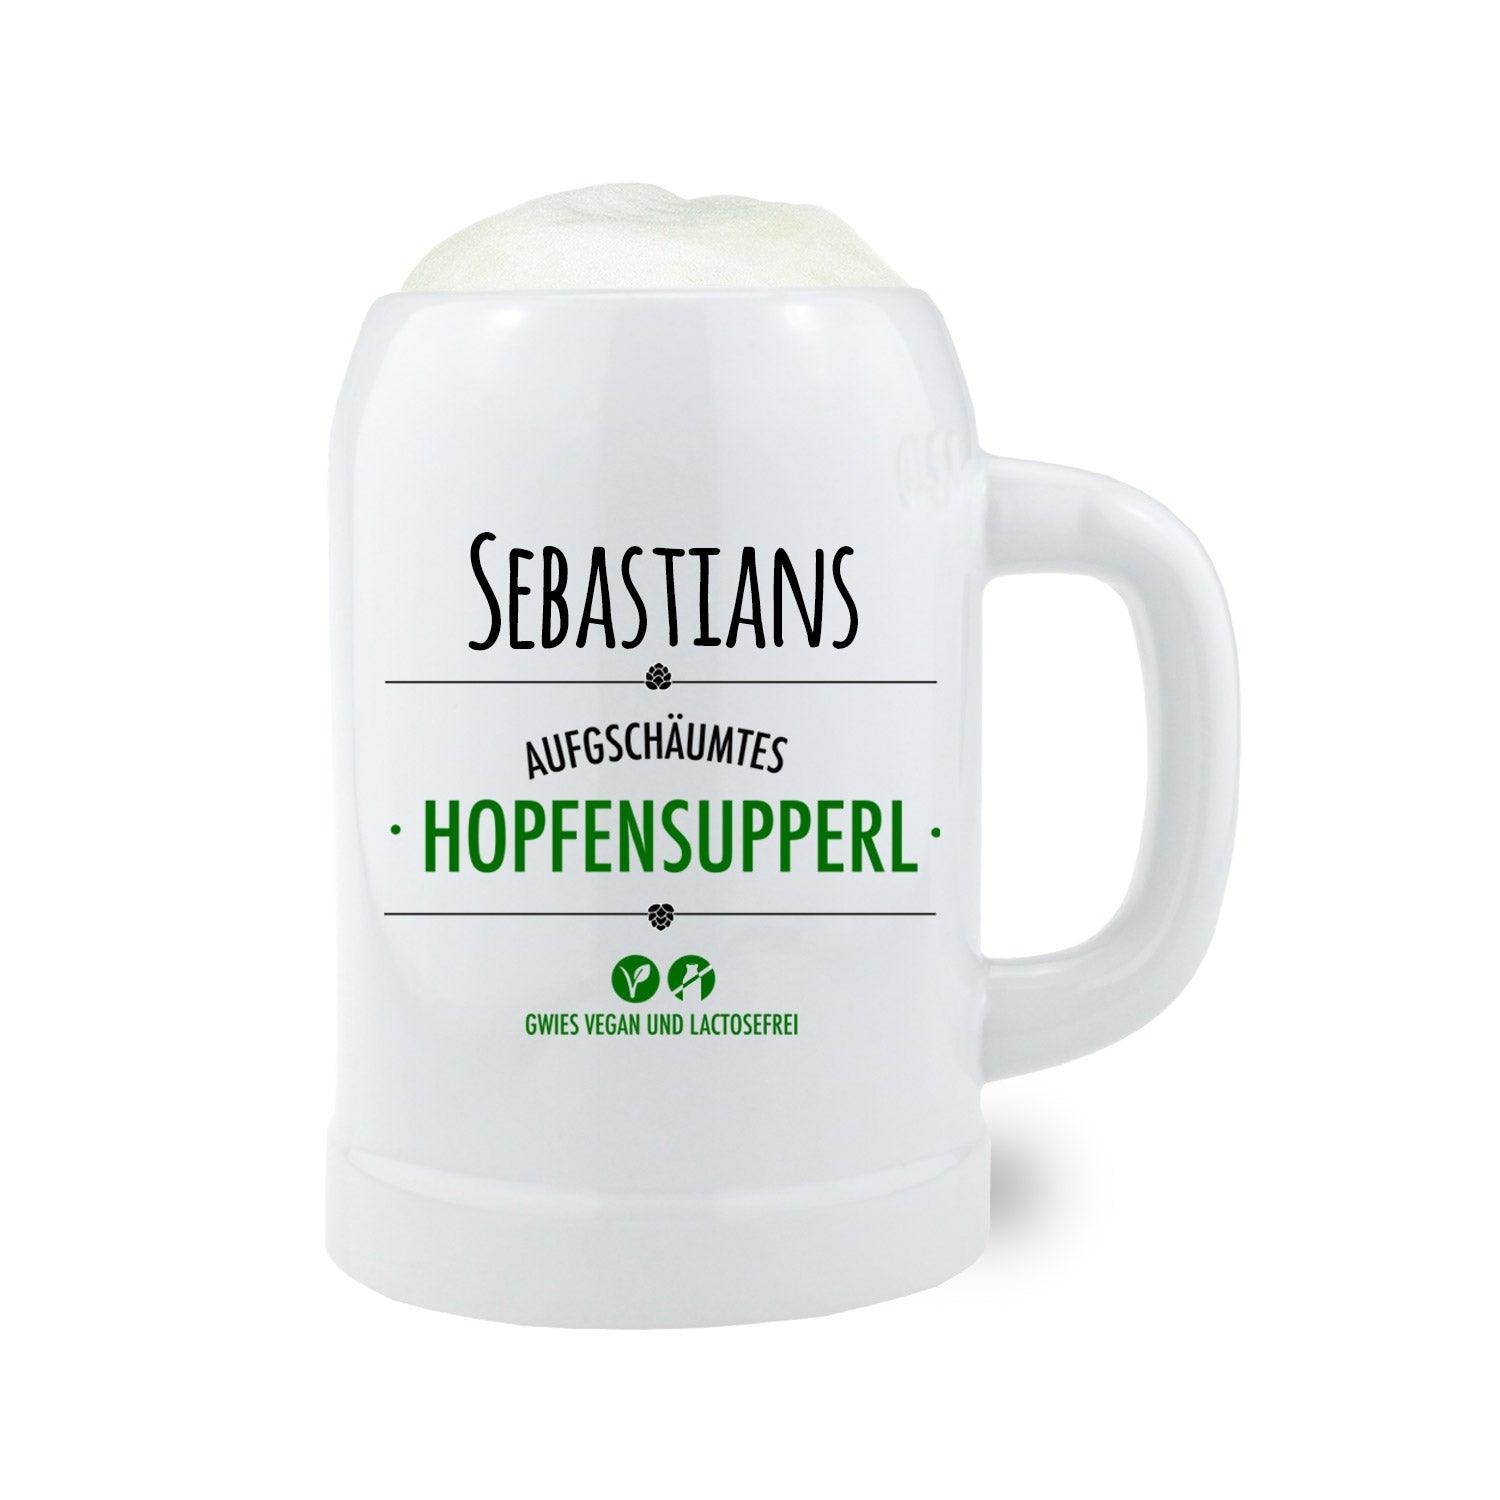 Stein Bierkrug "Hopfensupperl" mit Wunschname - bavariashop - mei LebensGfui